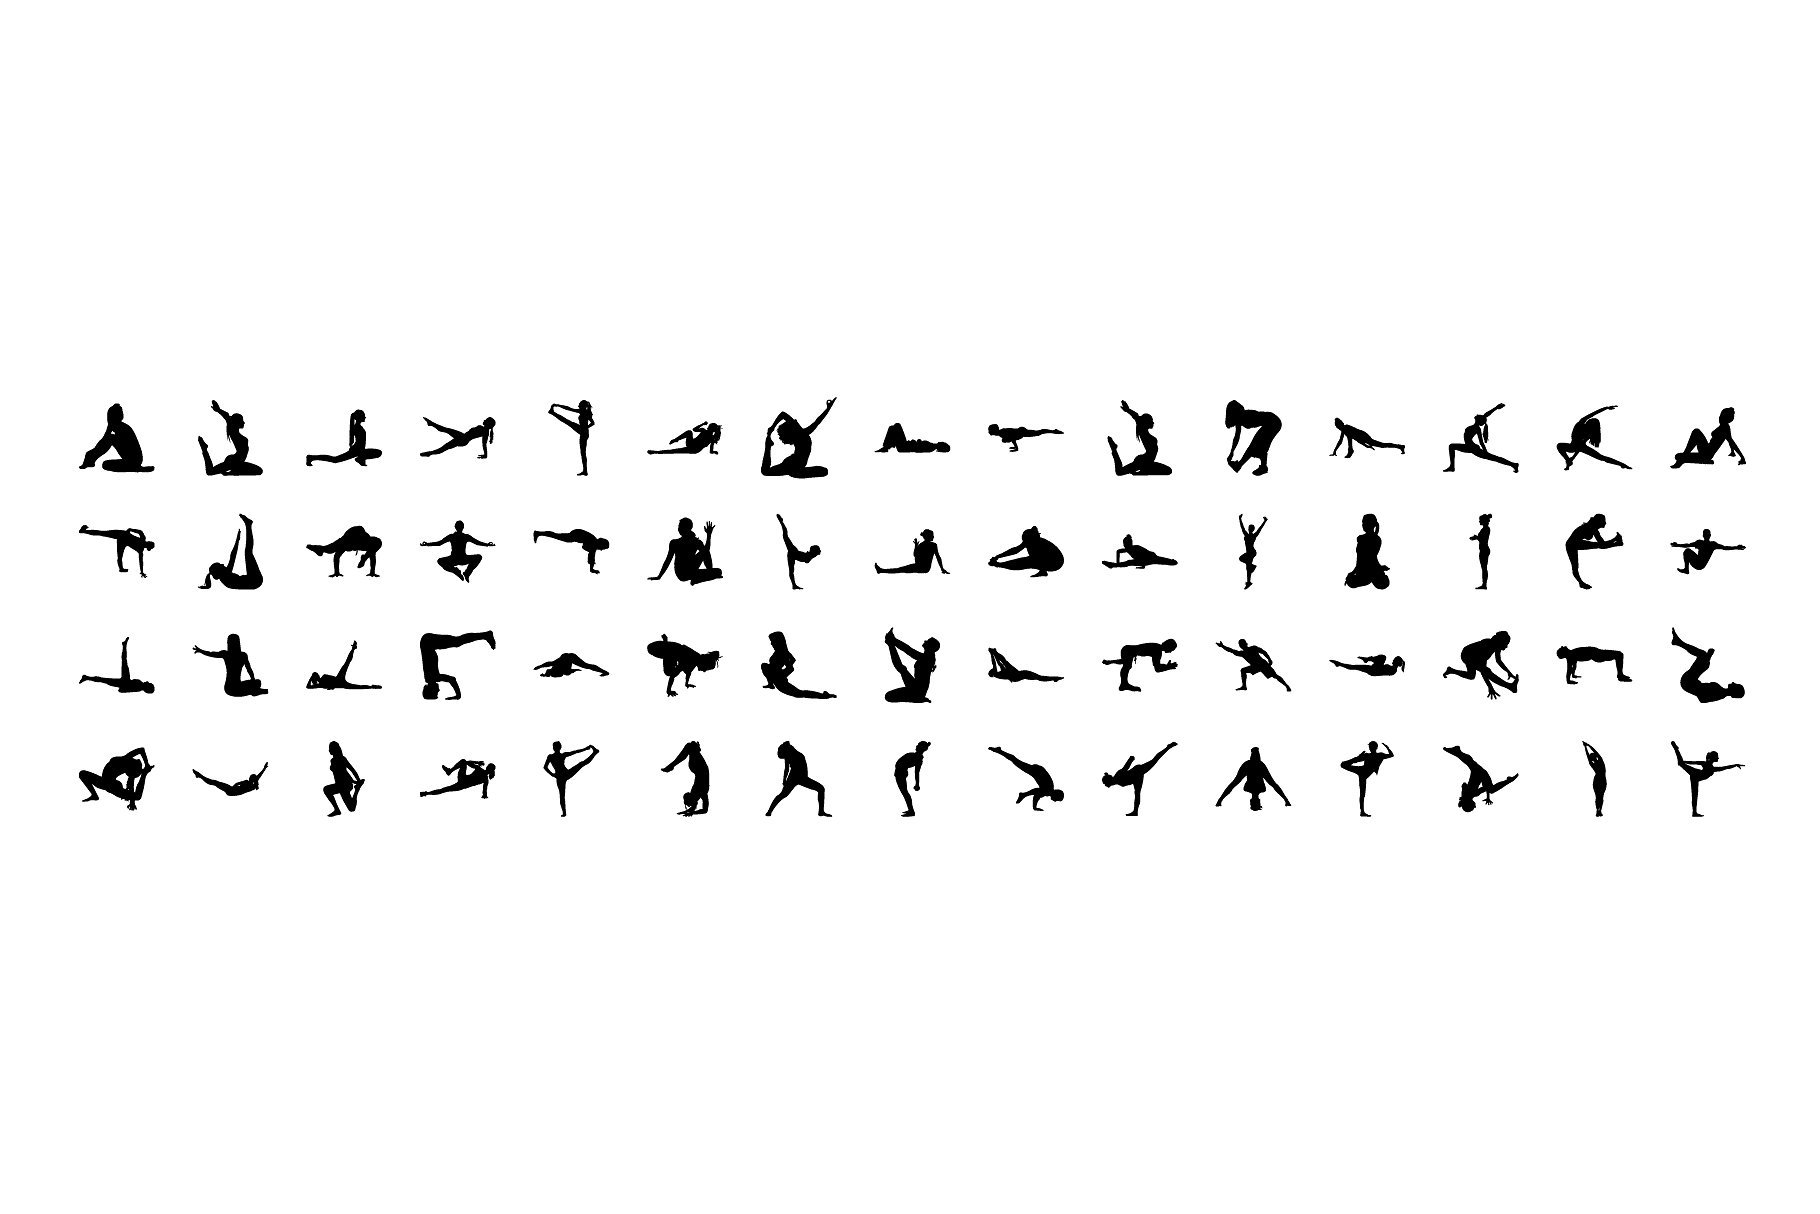 瑜伽和普拉提运动图标Yoga and Pilates Sil